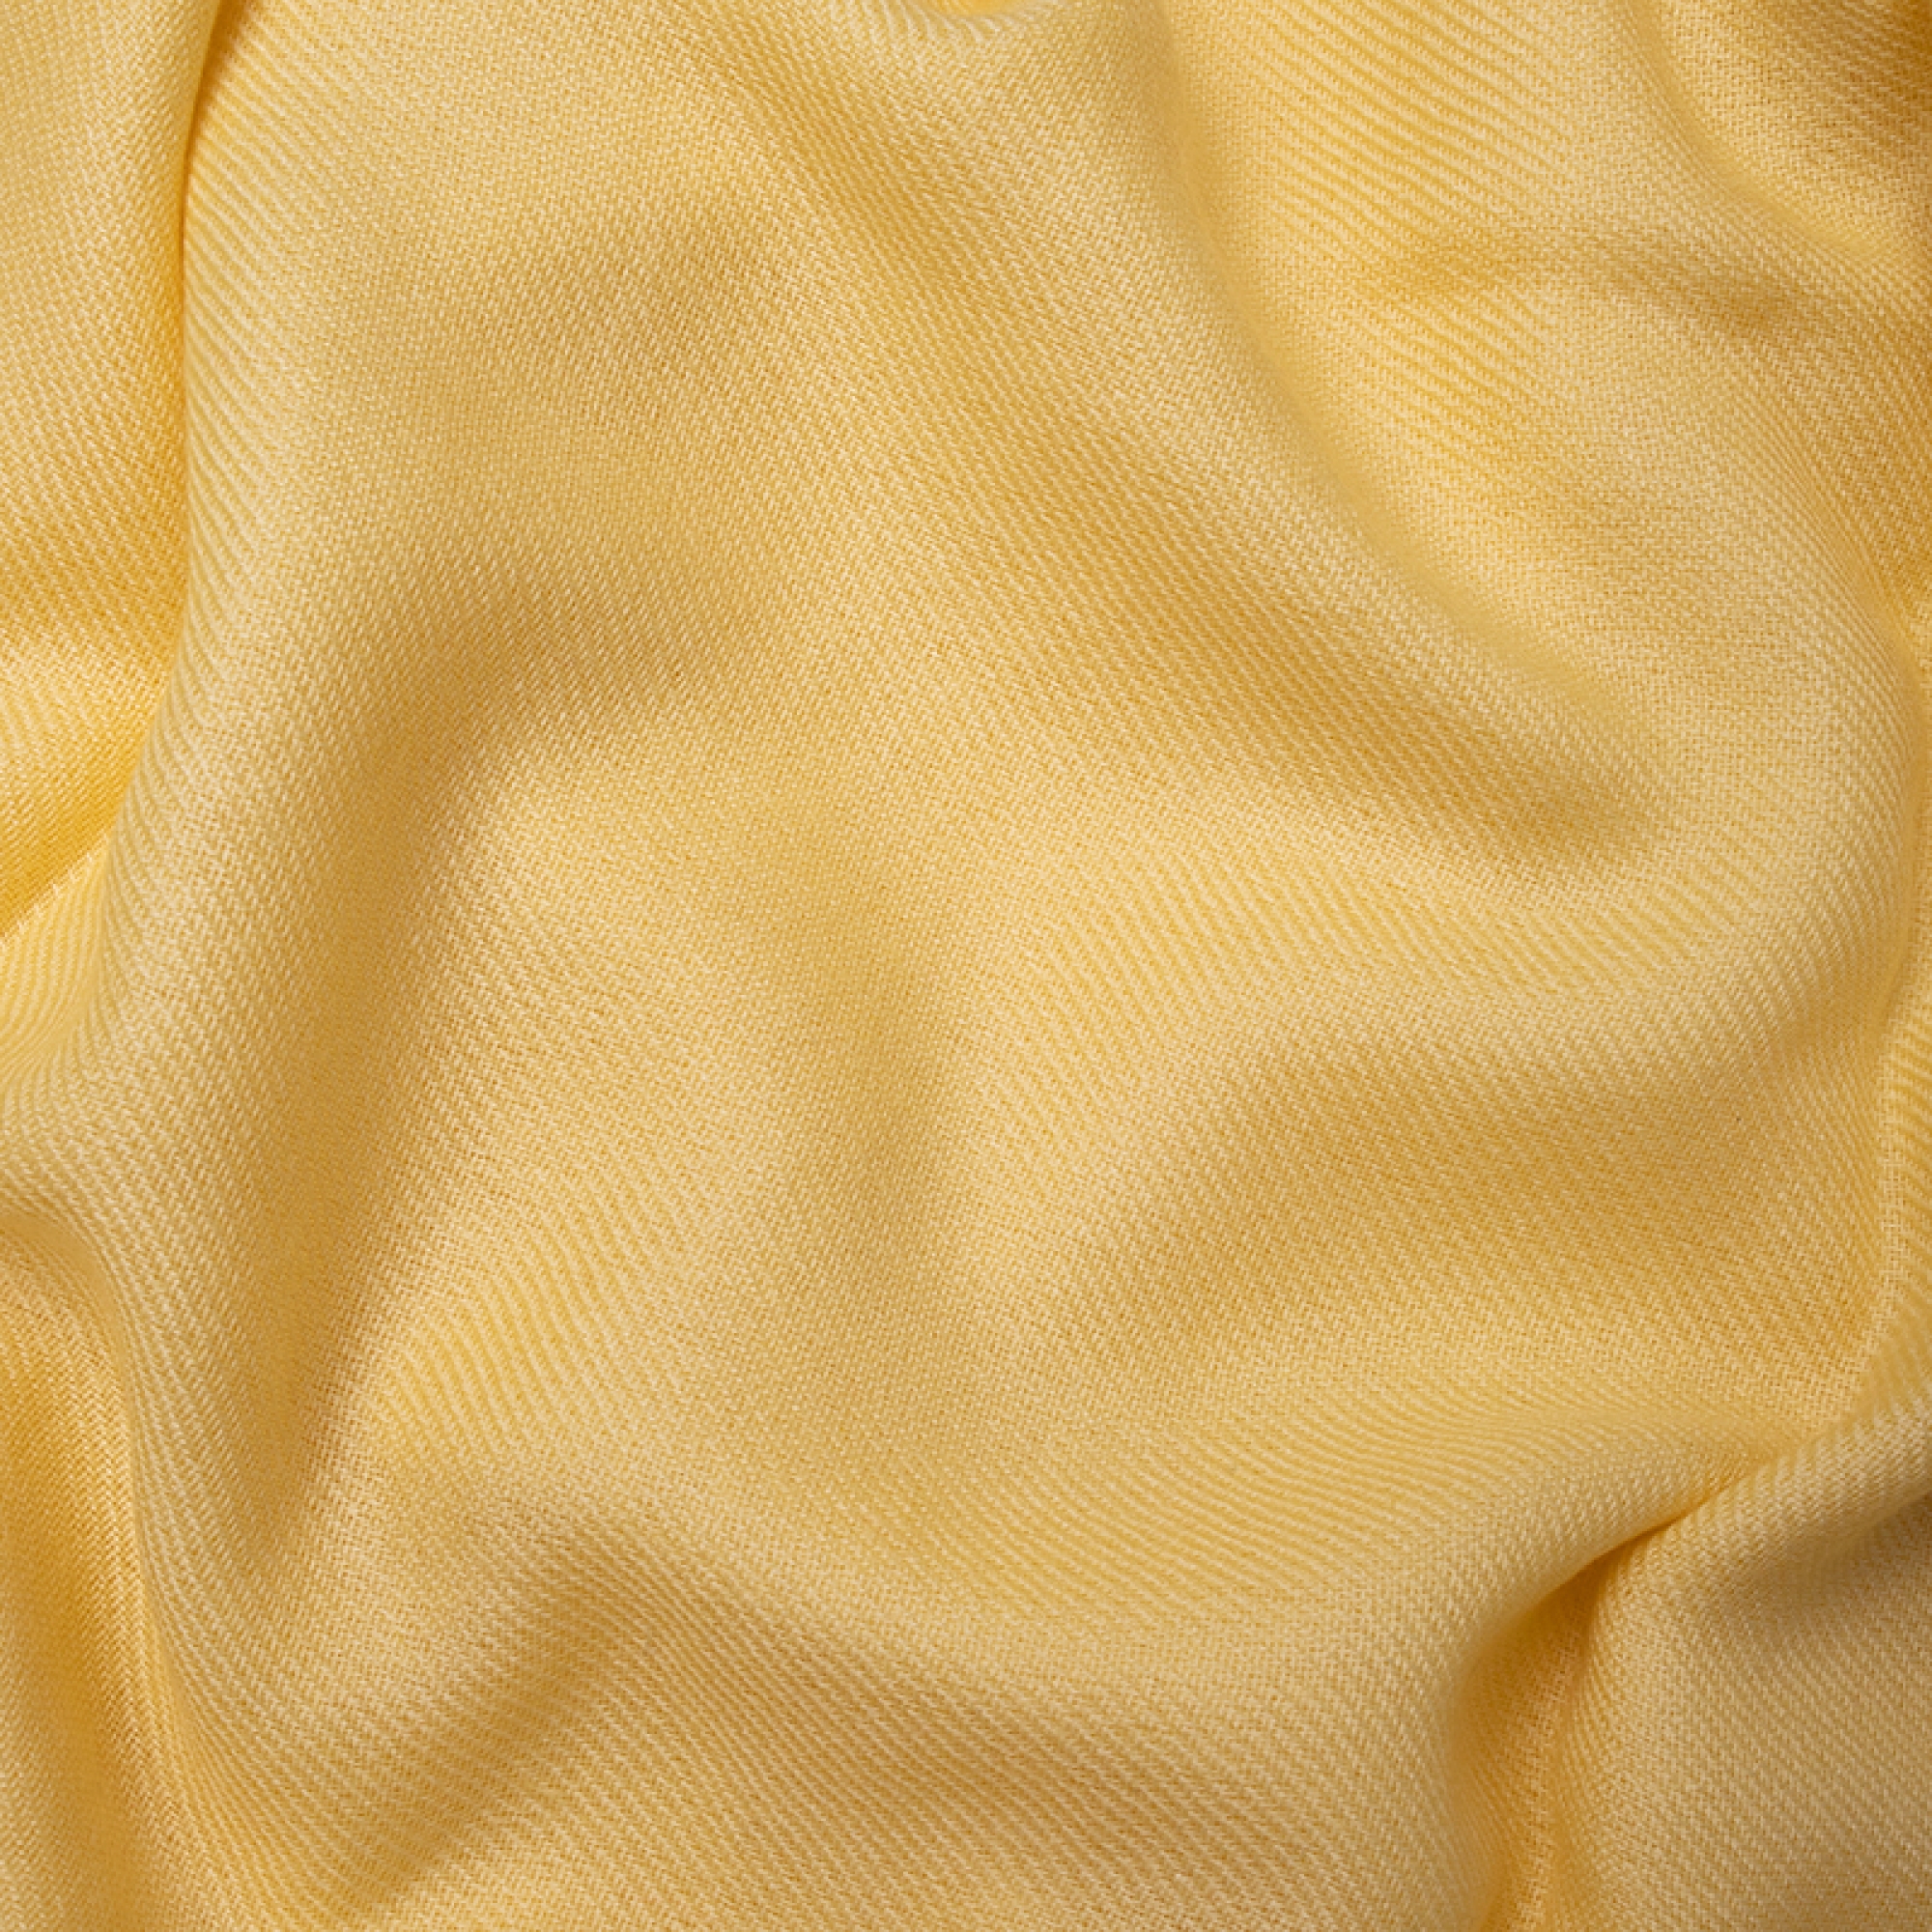 Cachemire accessoires couvertures plaids toodoo plain xl 240 x 260 jaune pastel 240 x 260 cm